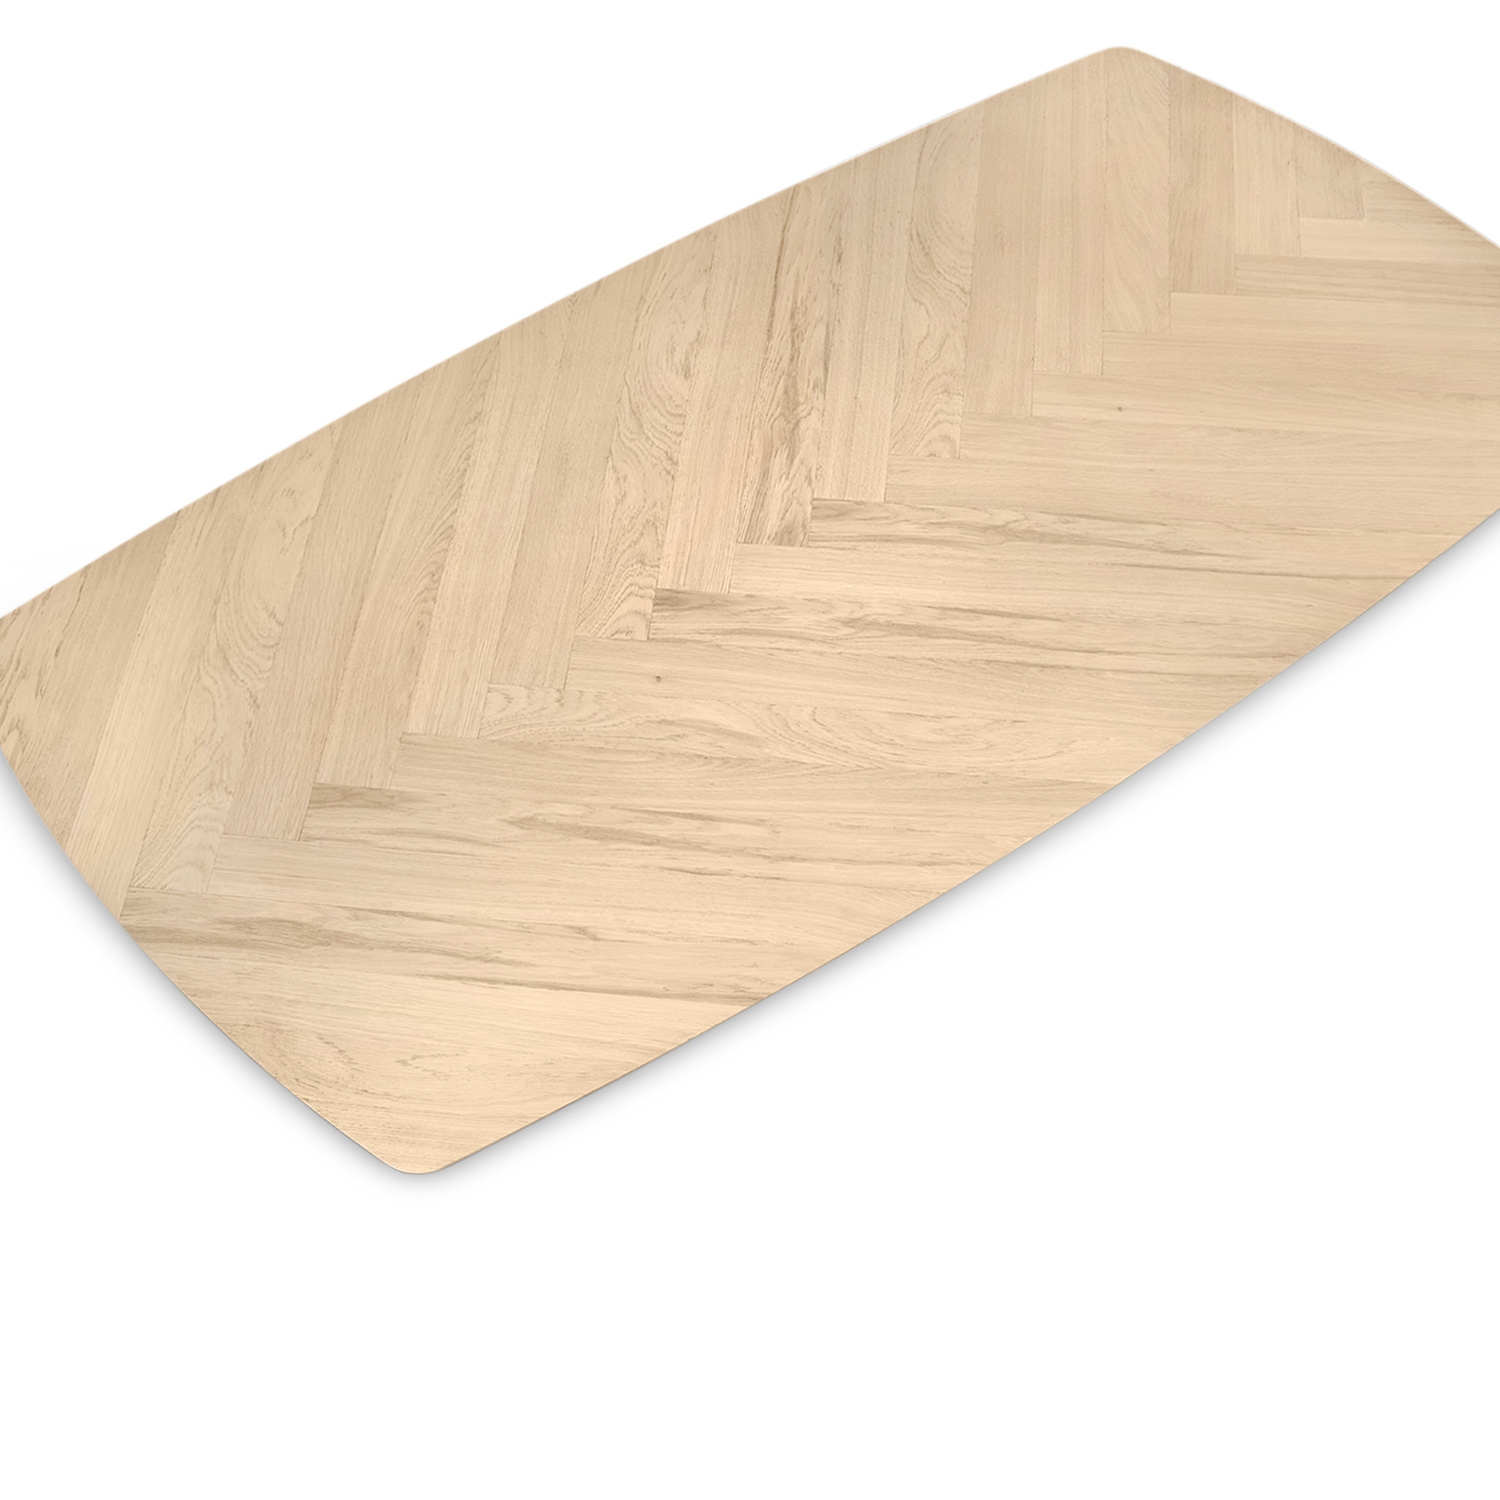  Eiken fineer tafelblad - visgraat motief - Deens ovaal - met verjongde rand - 3,6 cm dik - foutvrij Europees eikenhout - eikenfineer op spaanplaat